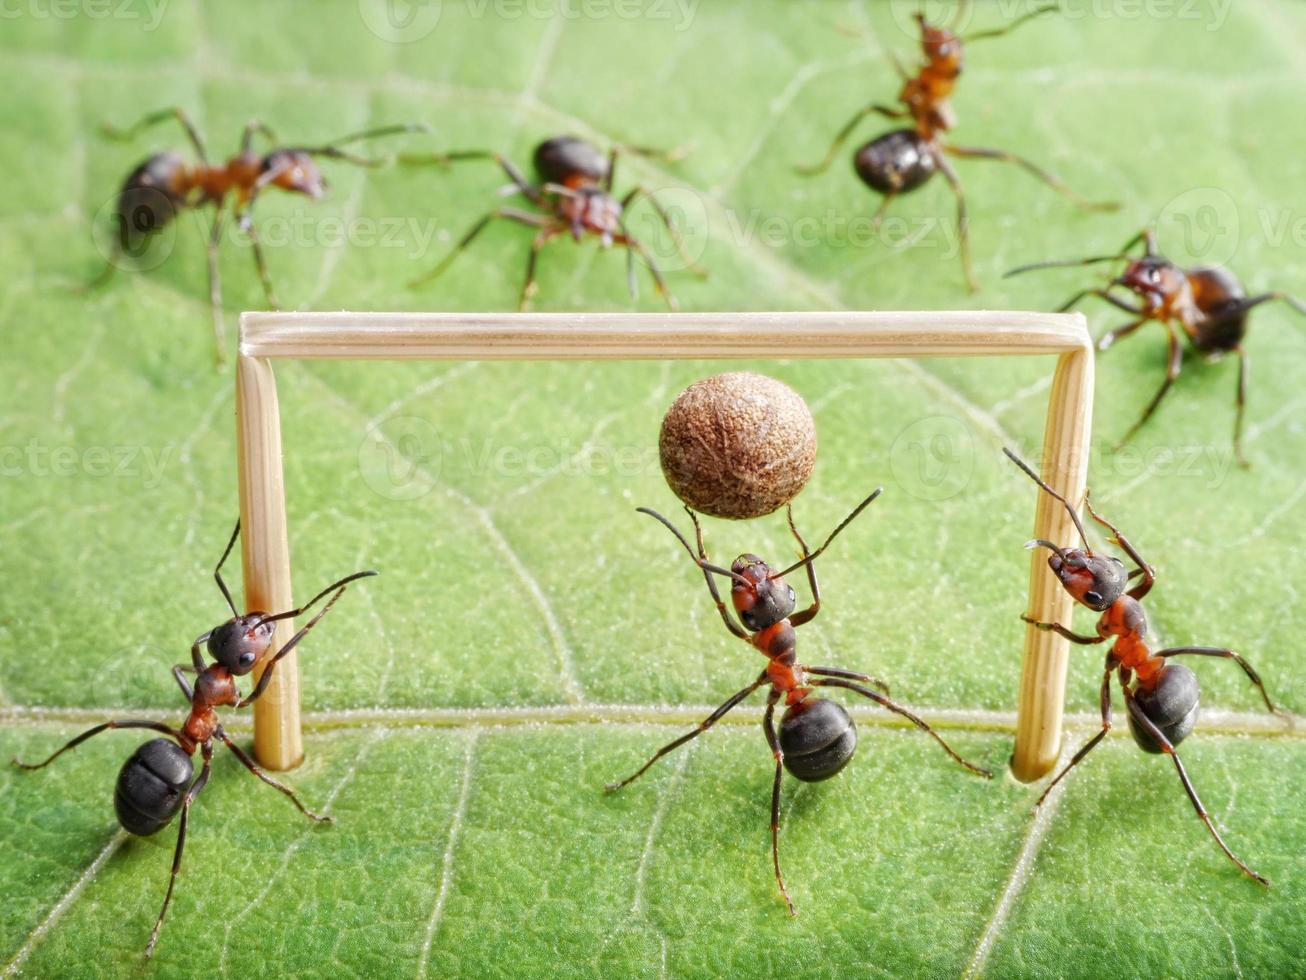 gol, las hormigas juegan fútbol foto